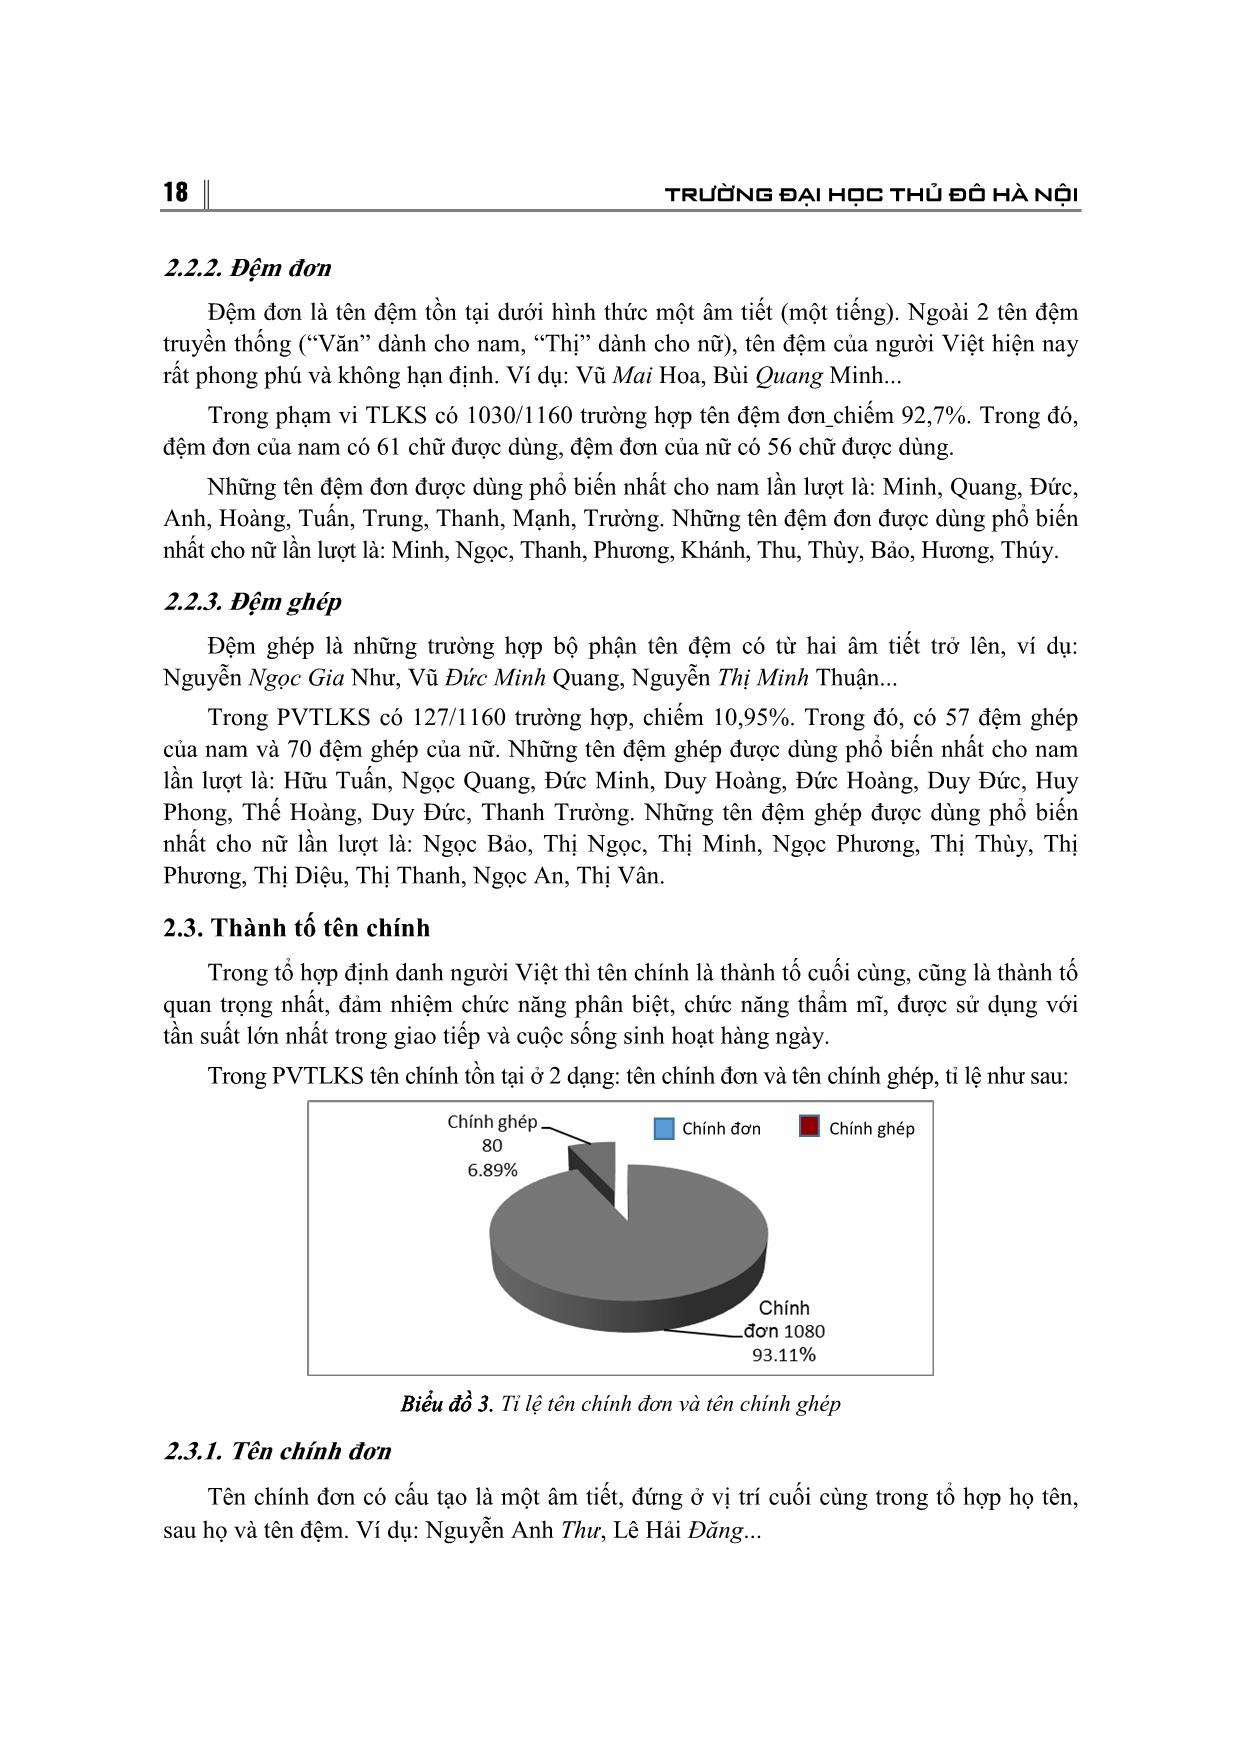 Đặc điểm cấu trúc tên riêng (chính danh) của người Việt từ đầu thế kỉ 21 đến nay trang 4